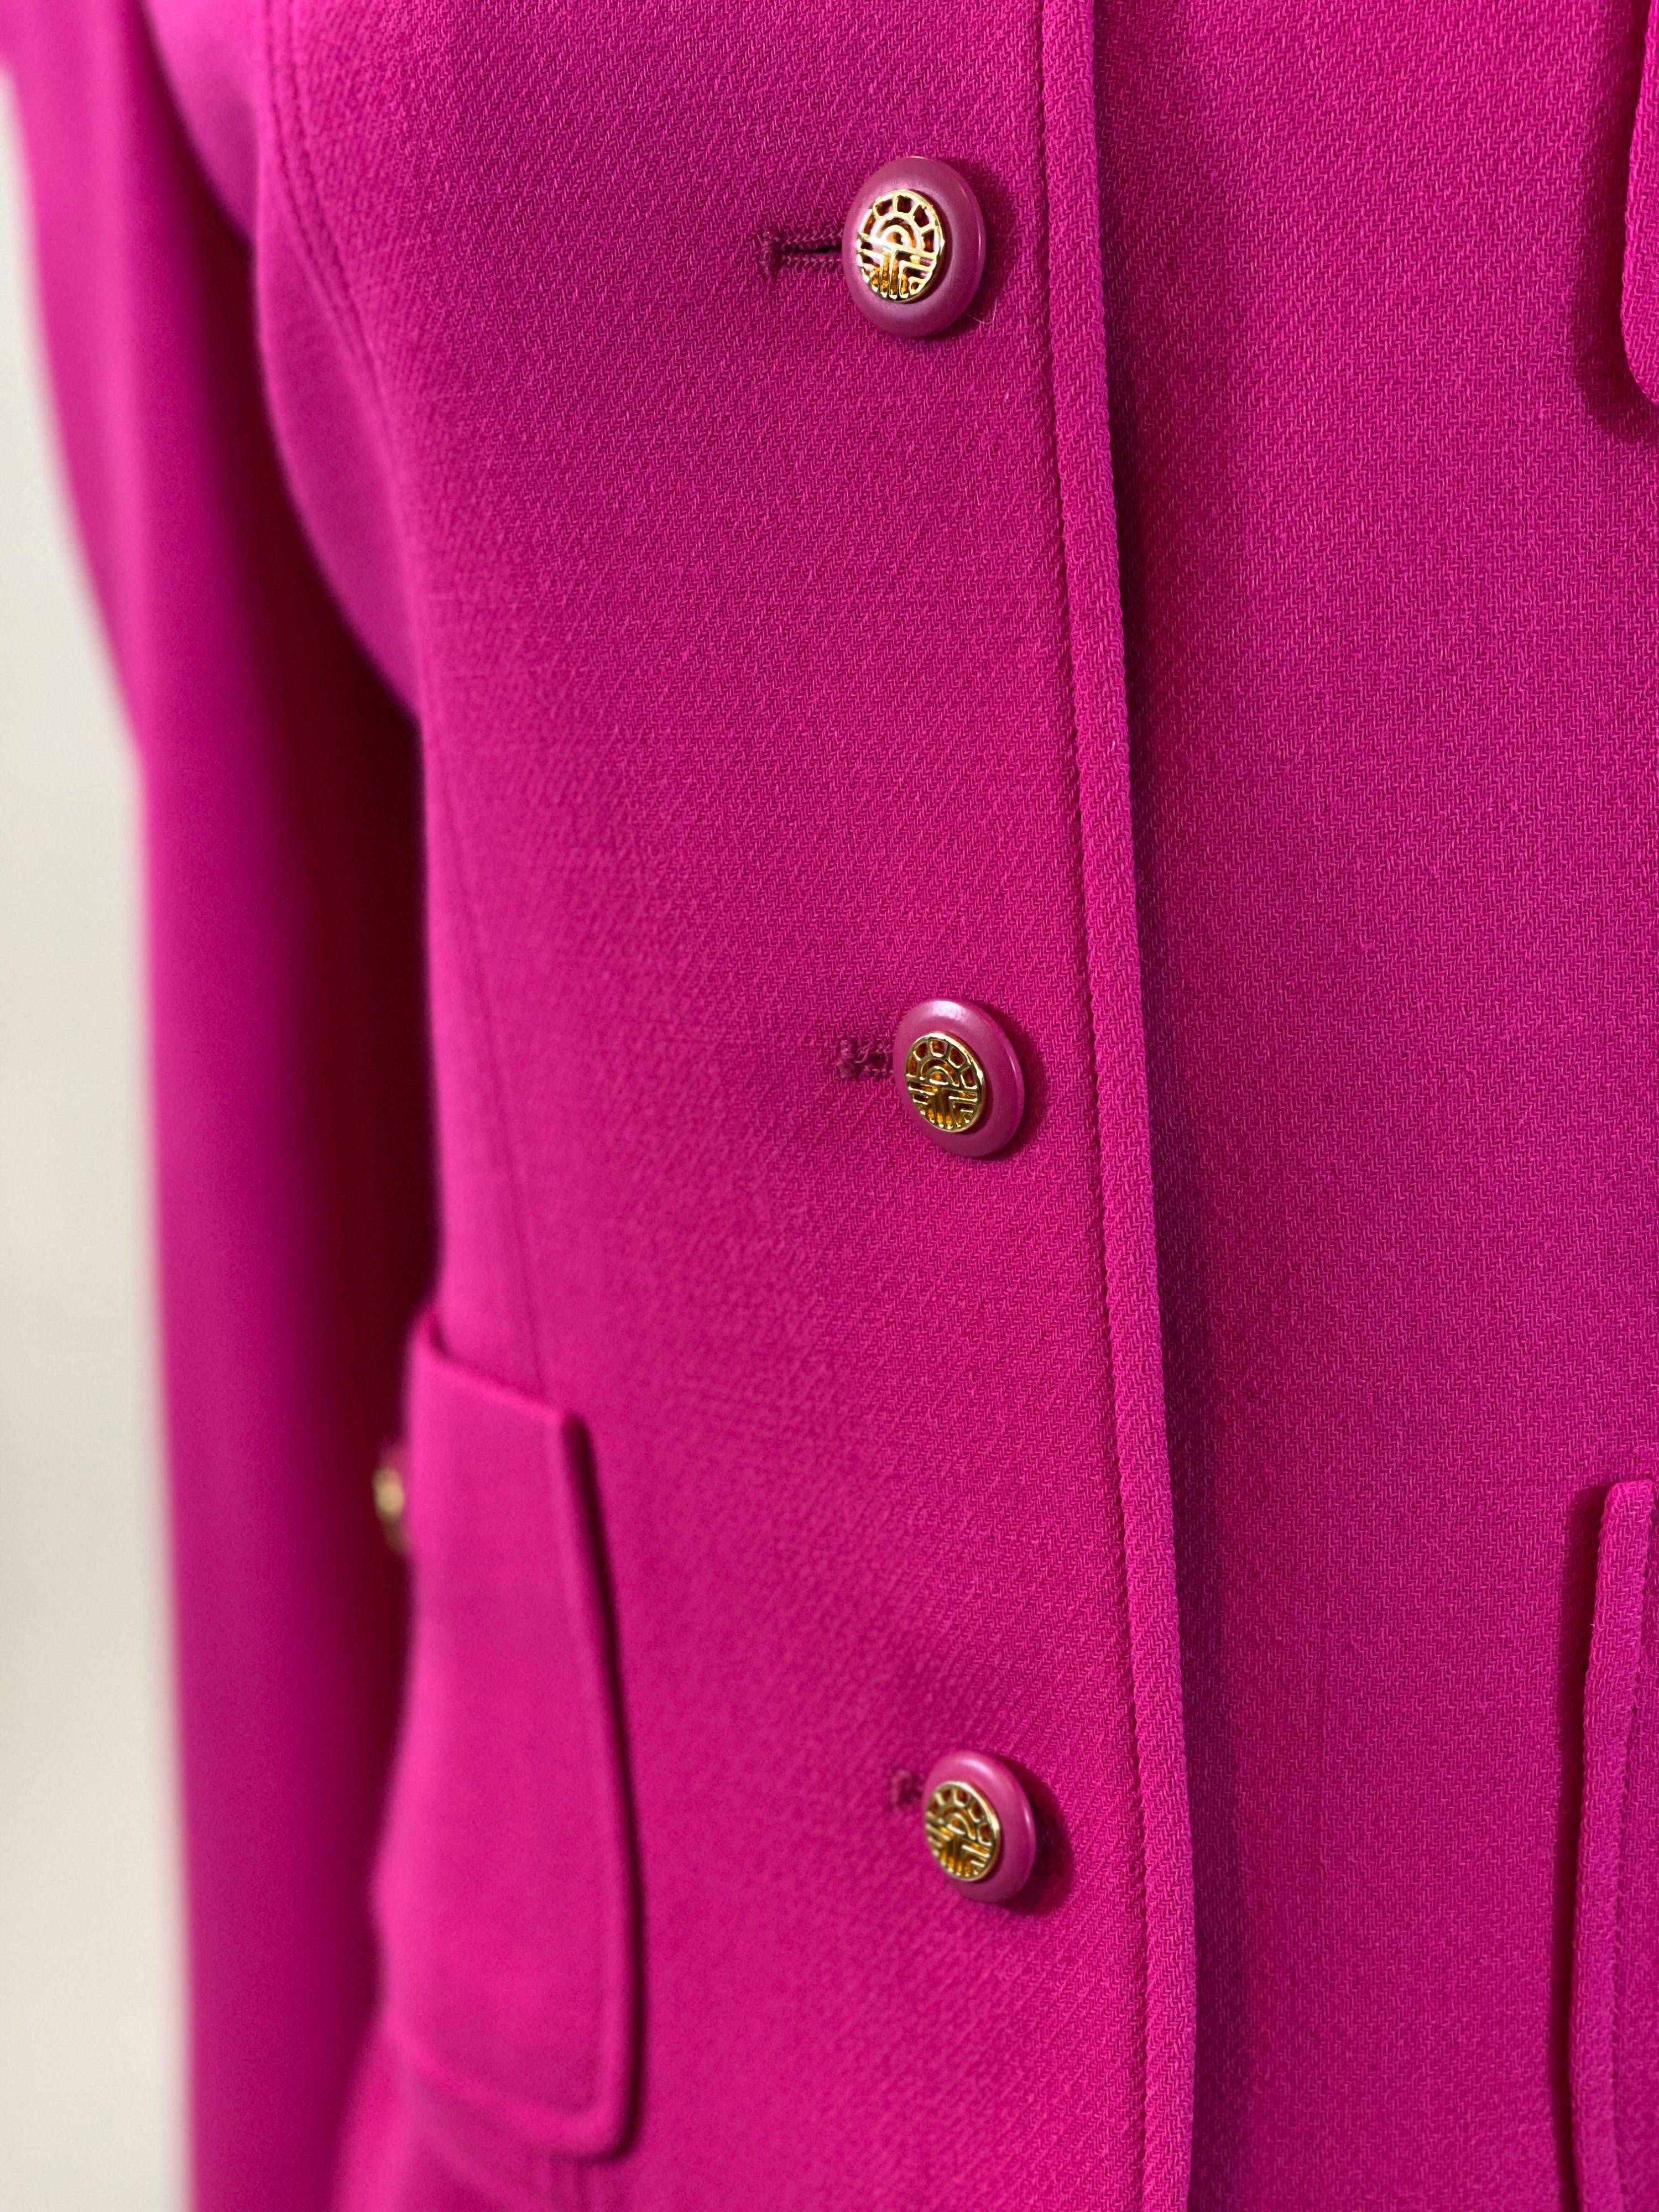 Louis Feraud Pink Virgin Wool Skirt Suit S